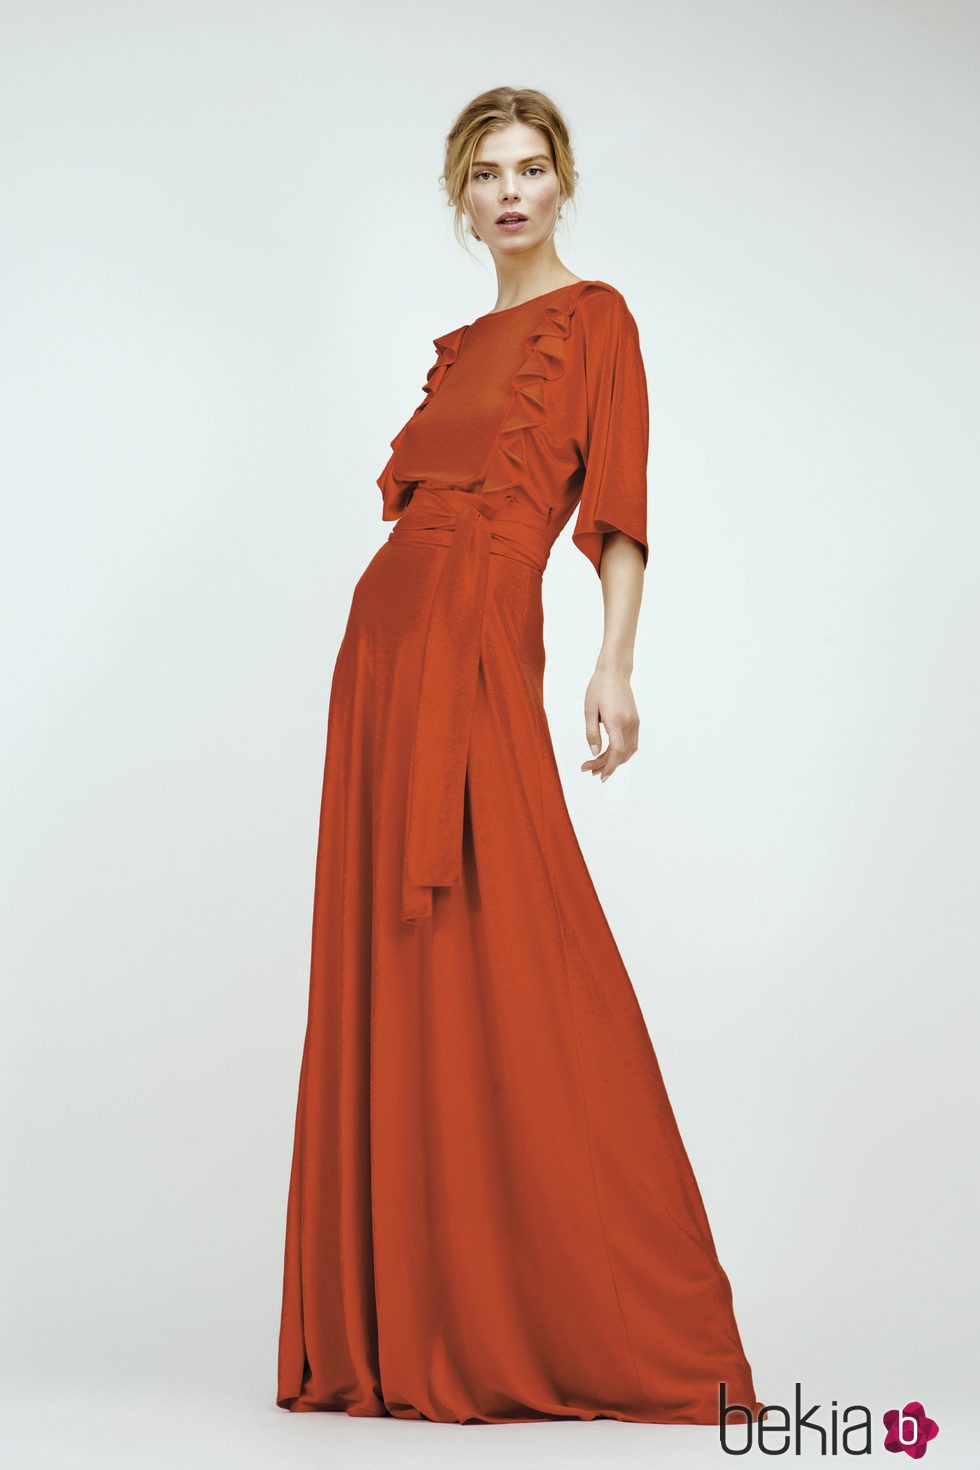 Vestido largo rojo con detalles asimétricos de Dolores Promesas Resort 2016